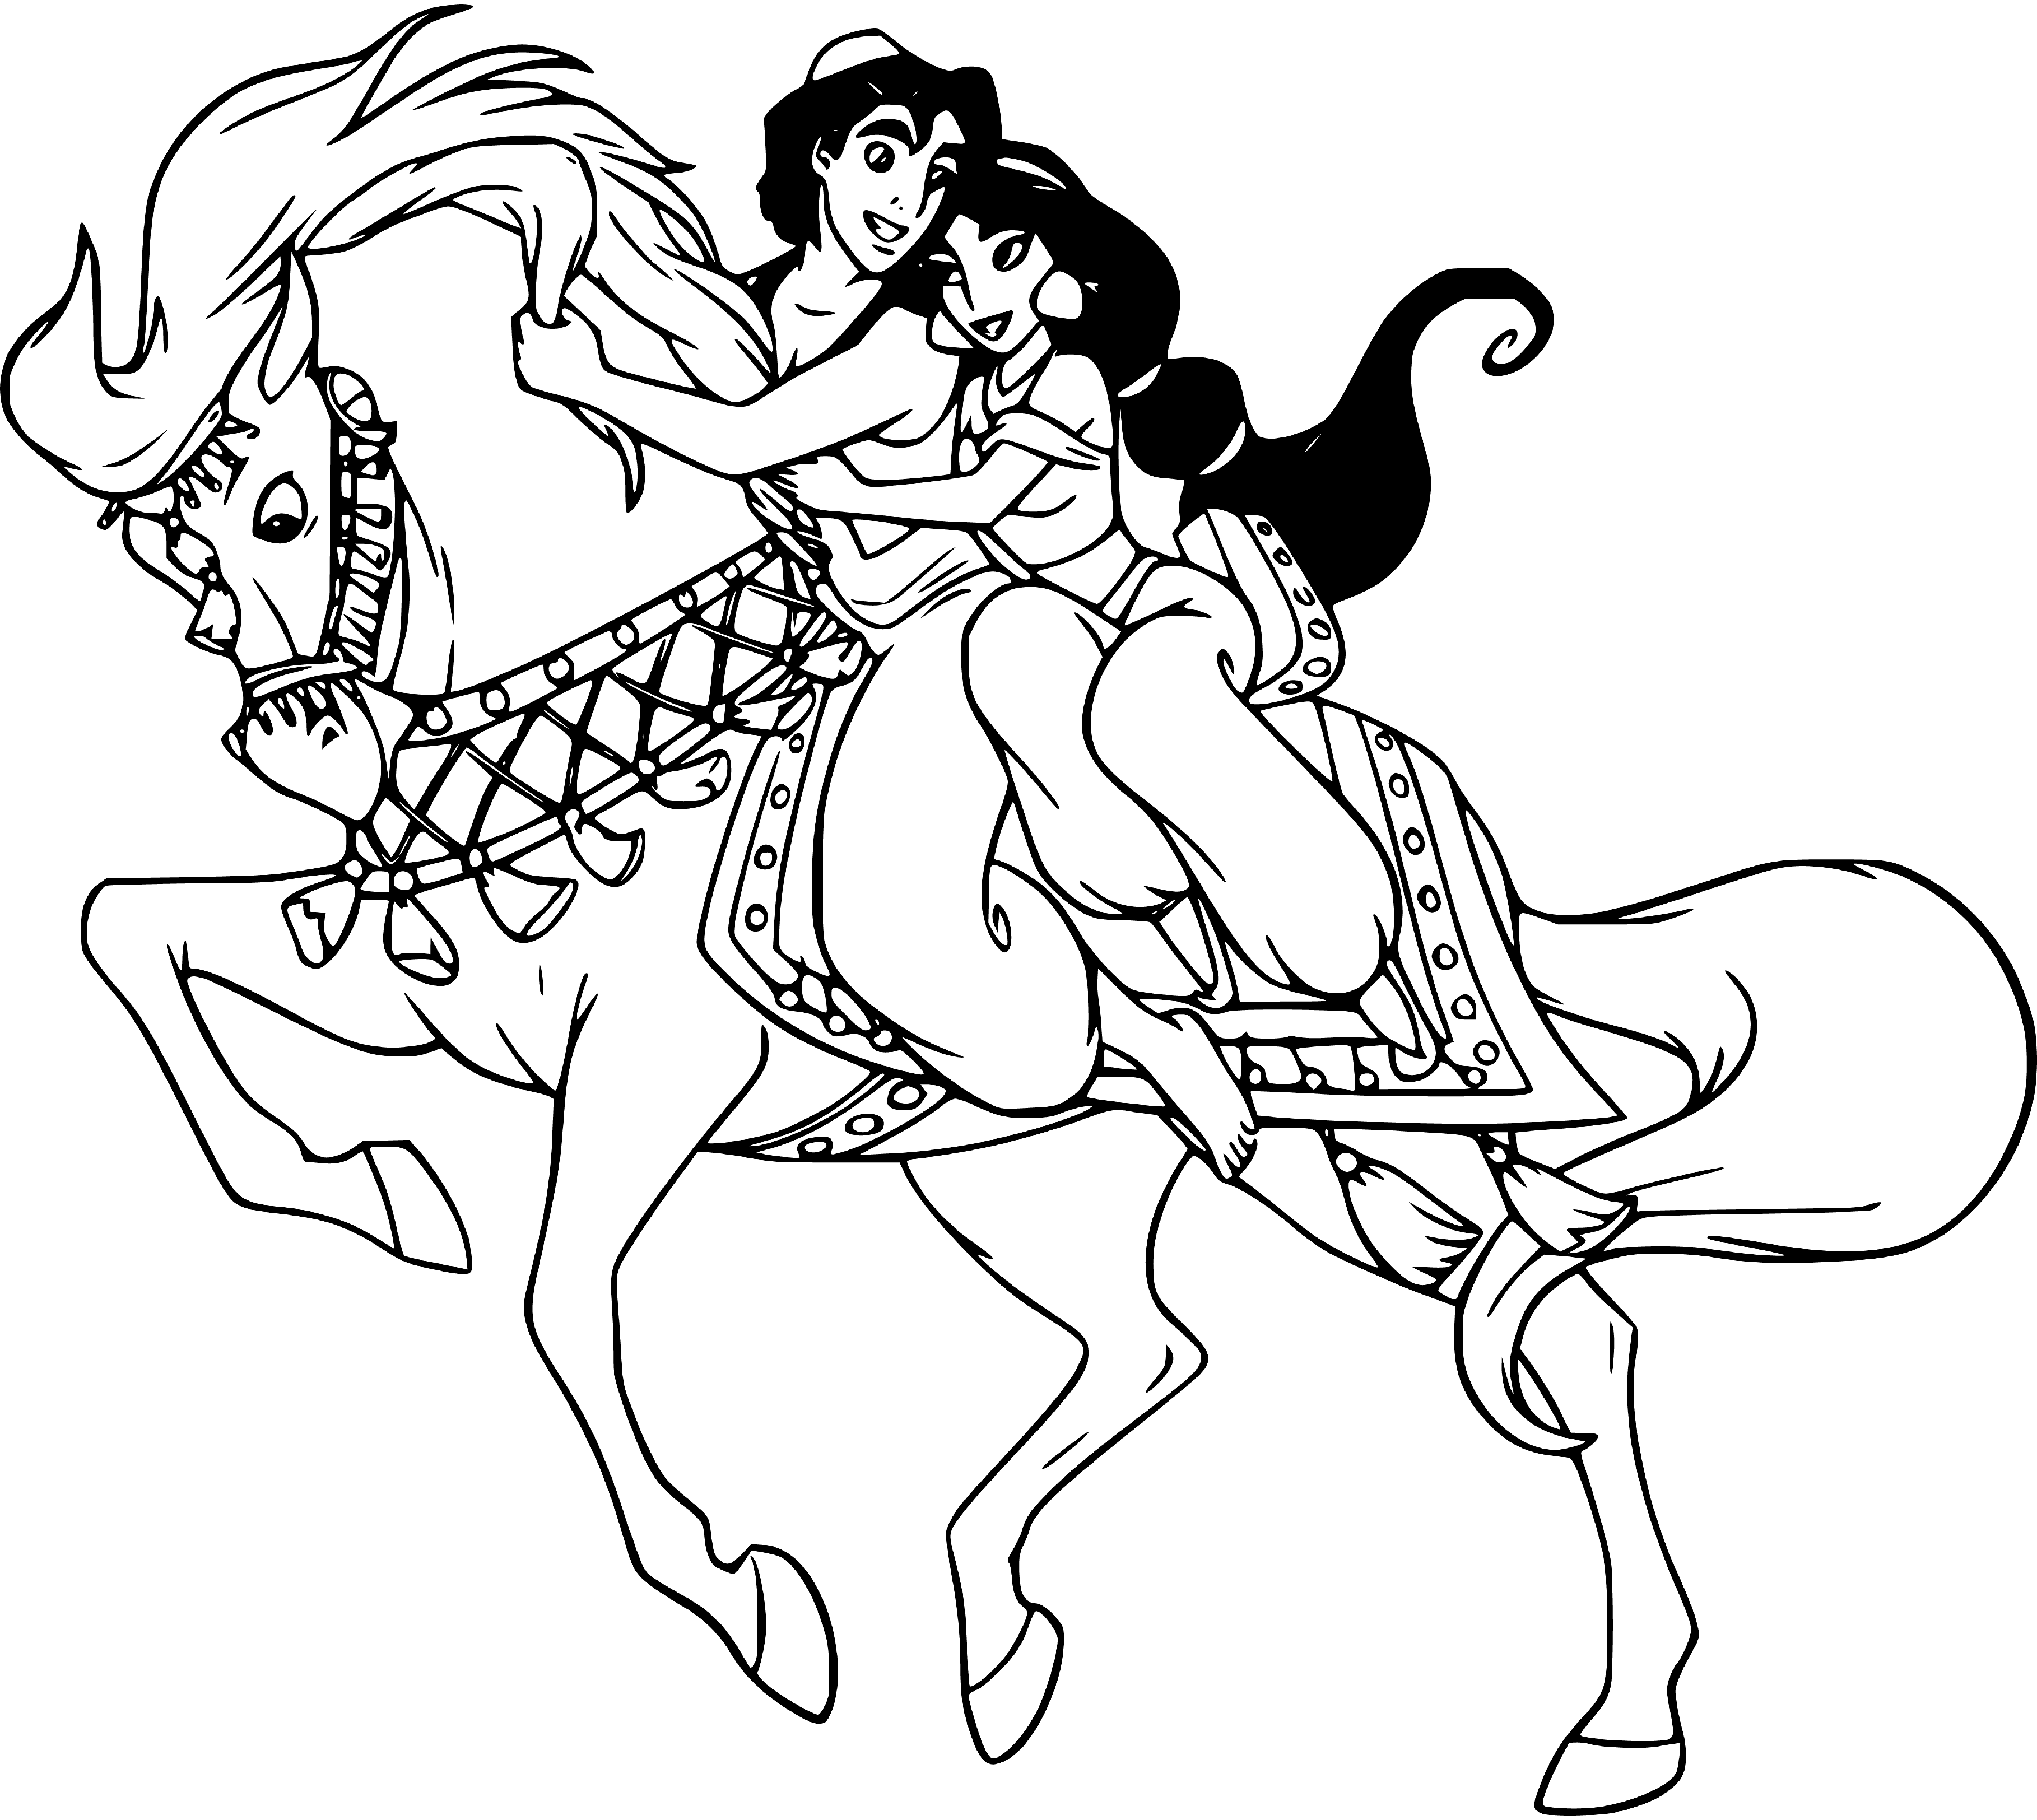 Aladdin and Jasmine riding a horse coloring sheet for kids - SheetalColor.com